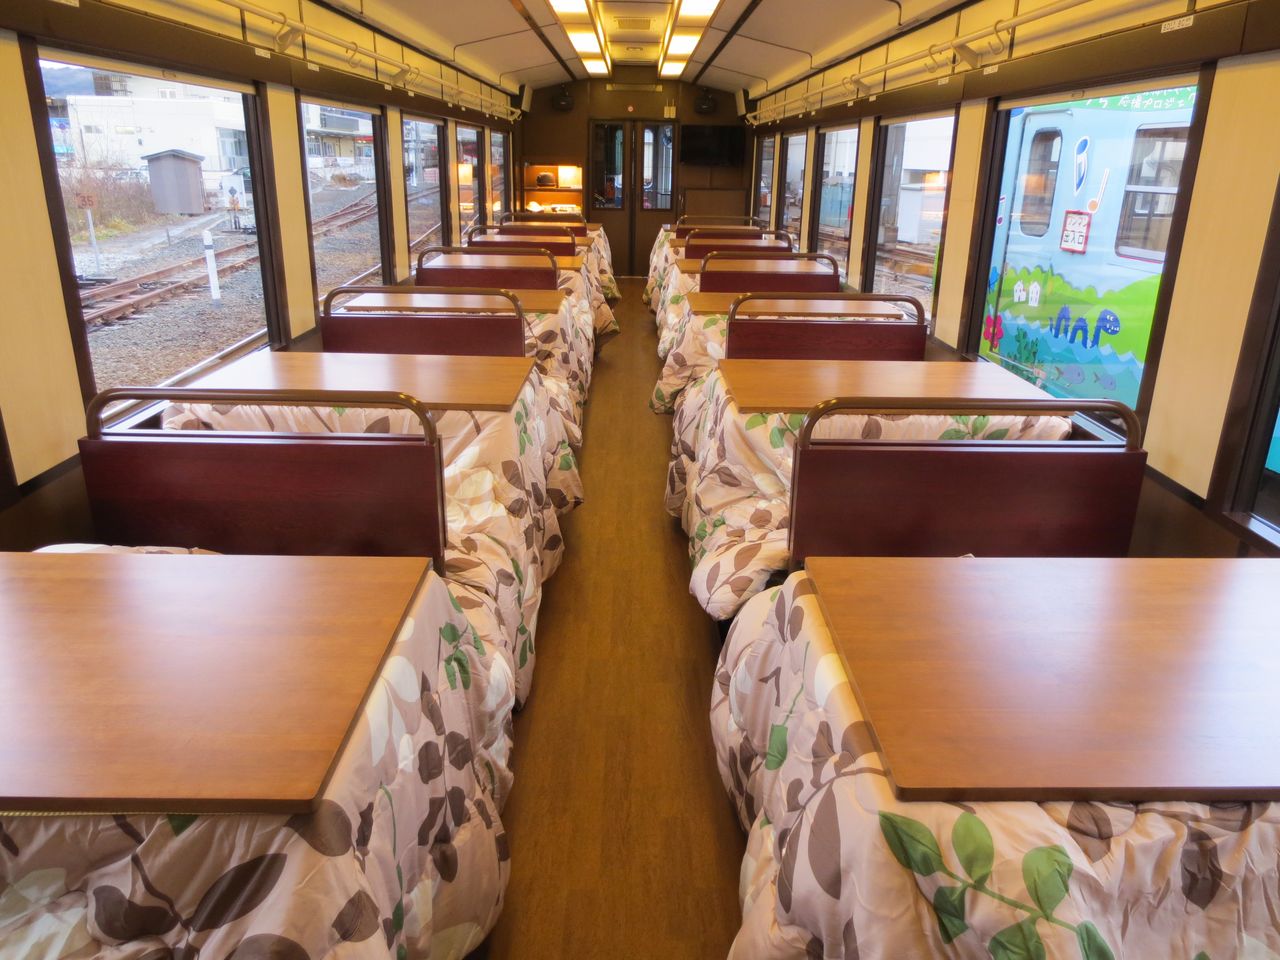 Asientos con brasero para cuatro personas. Los kotatsu le dan un aspecto muy hogareño al vagón (imagen cortesía del Ferrocarril de Sanriku).